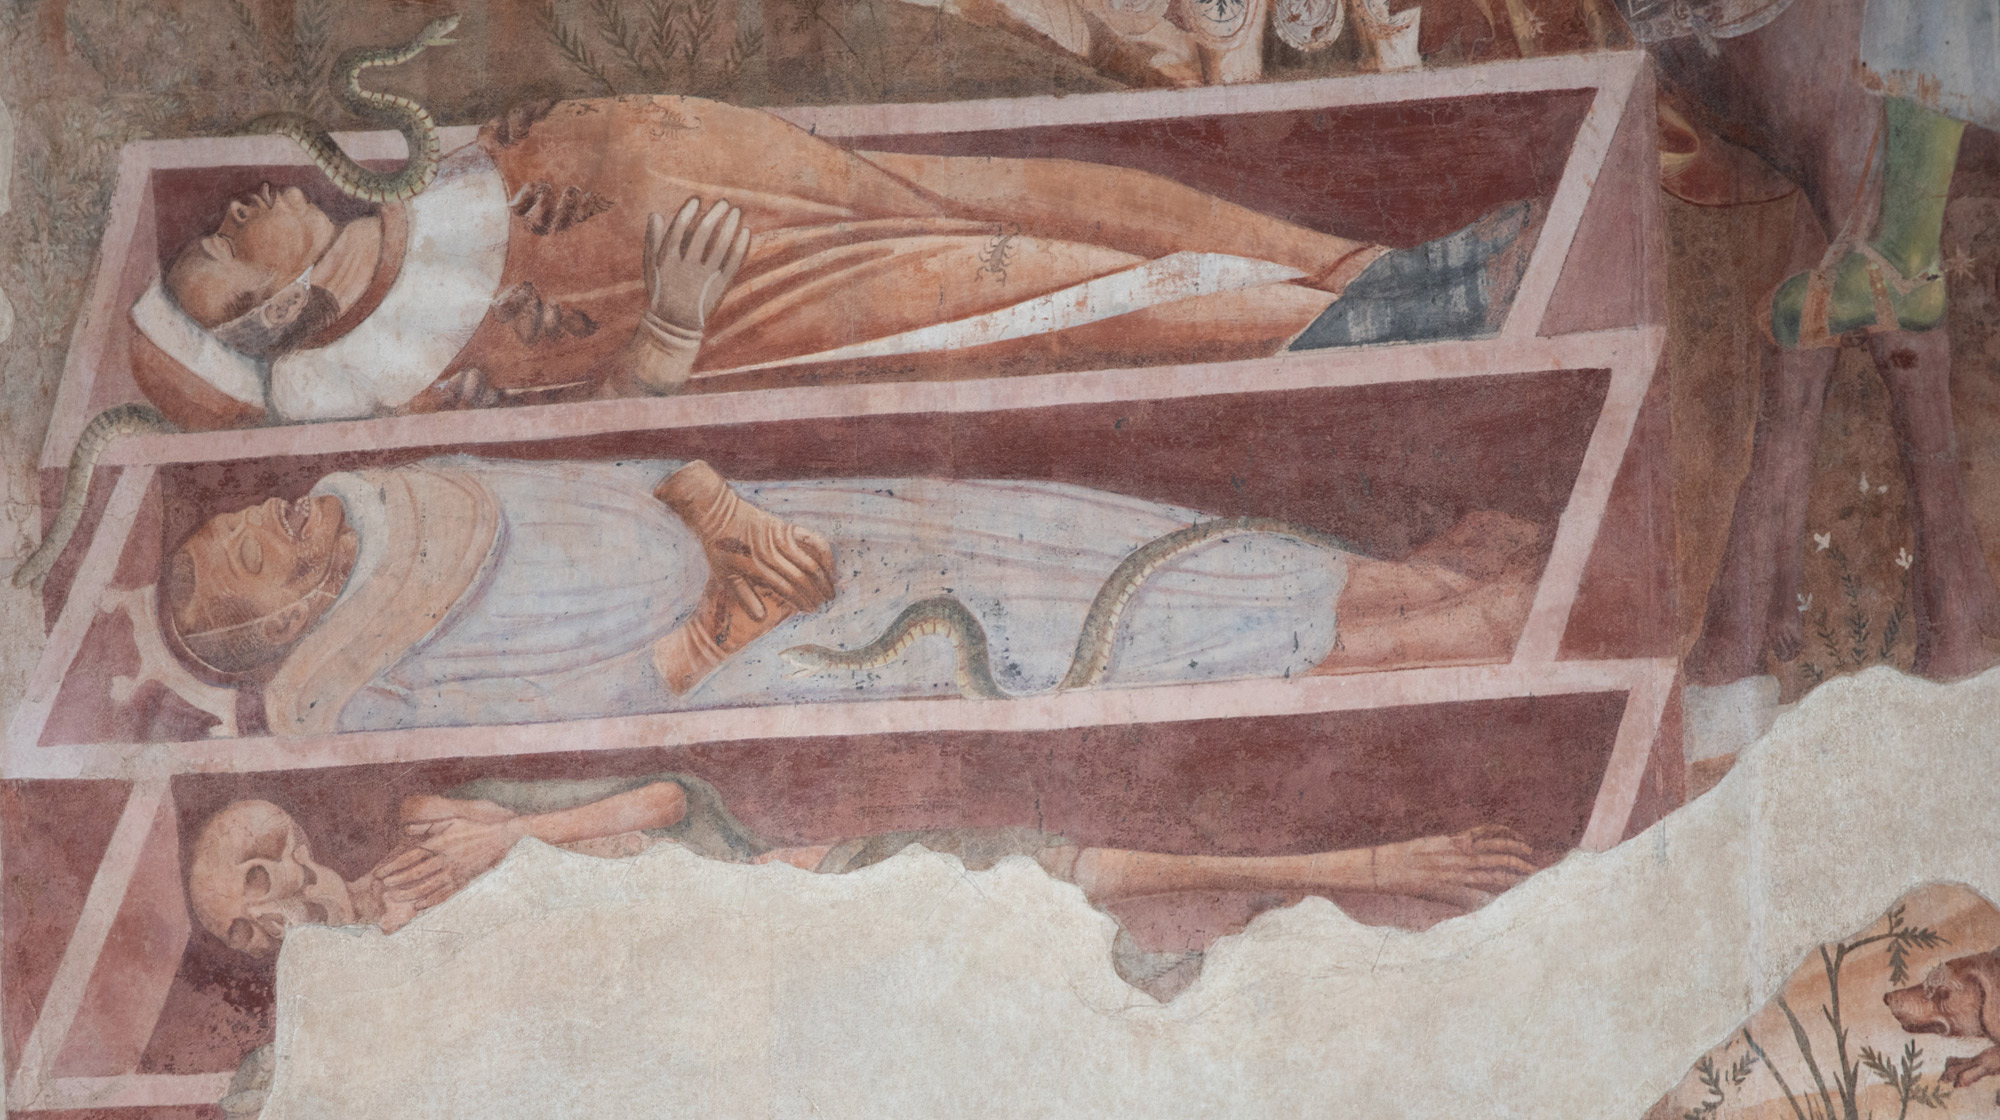 Bonamico Buffalmacco, Trionfo della Morte, dettaglio dei tre cadaveri
